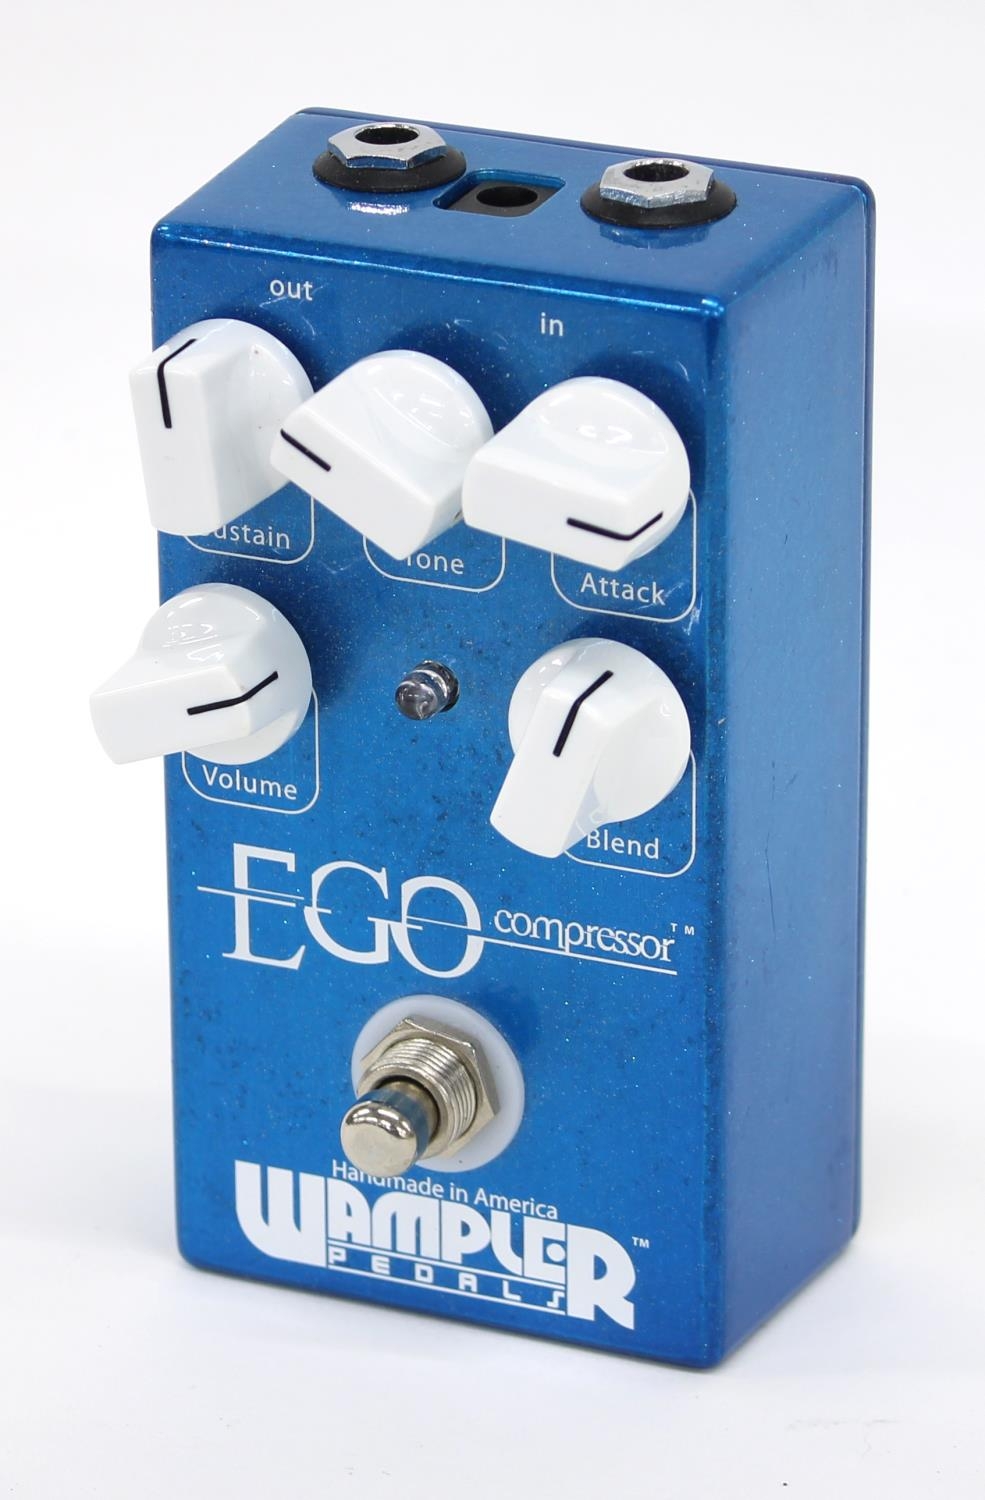 Wampler Ego Compressor guitar pedal